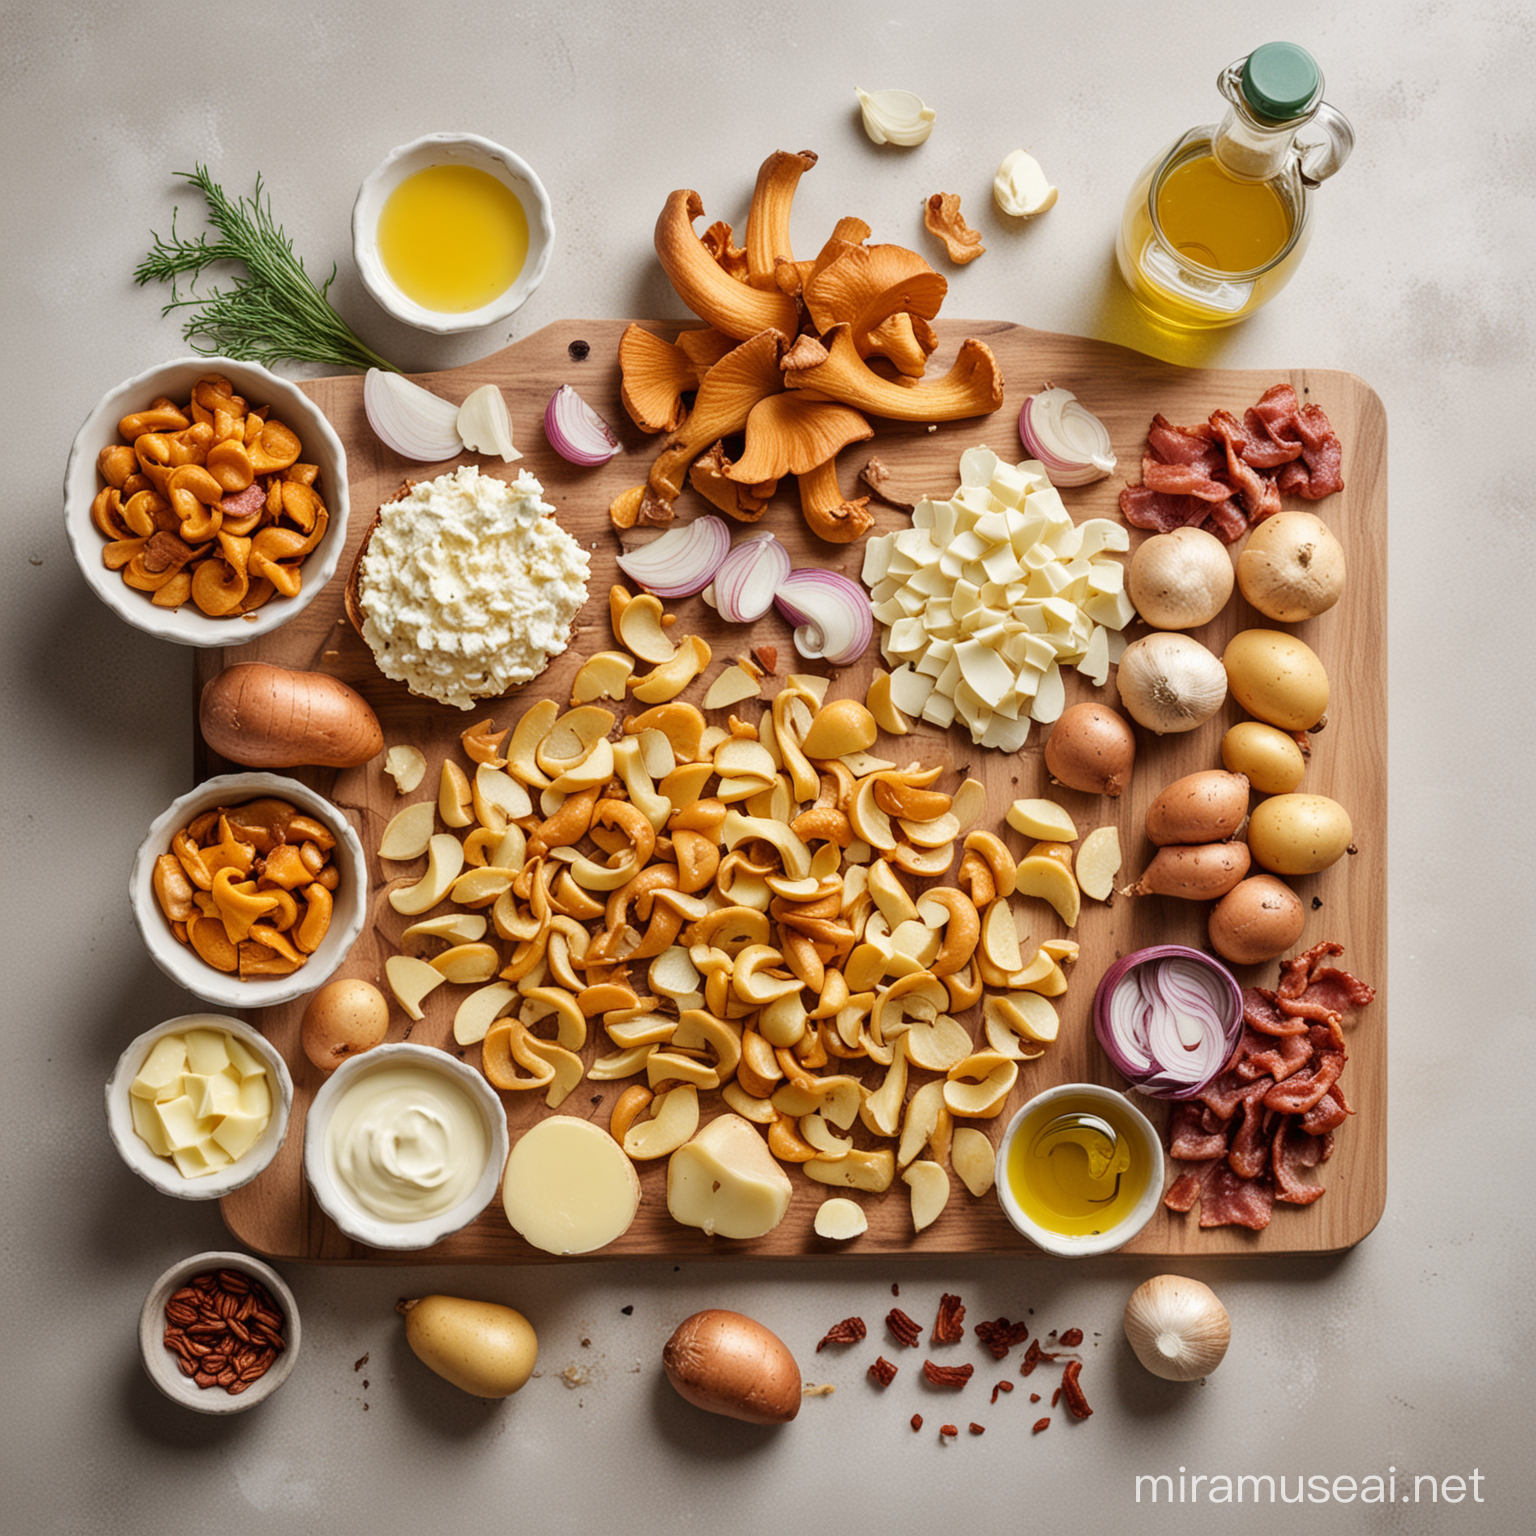 грибы лисички, лук, чеснок, масло, сливки, оливковое масло, бекон, картофель

все продукты лежат отдельно друг от друга на светлом фоне